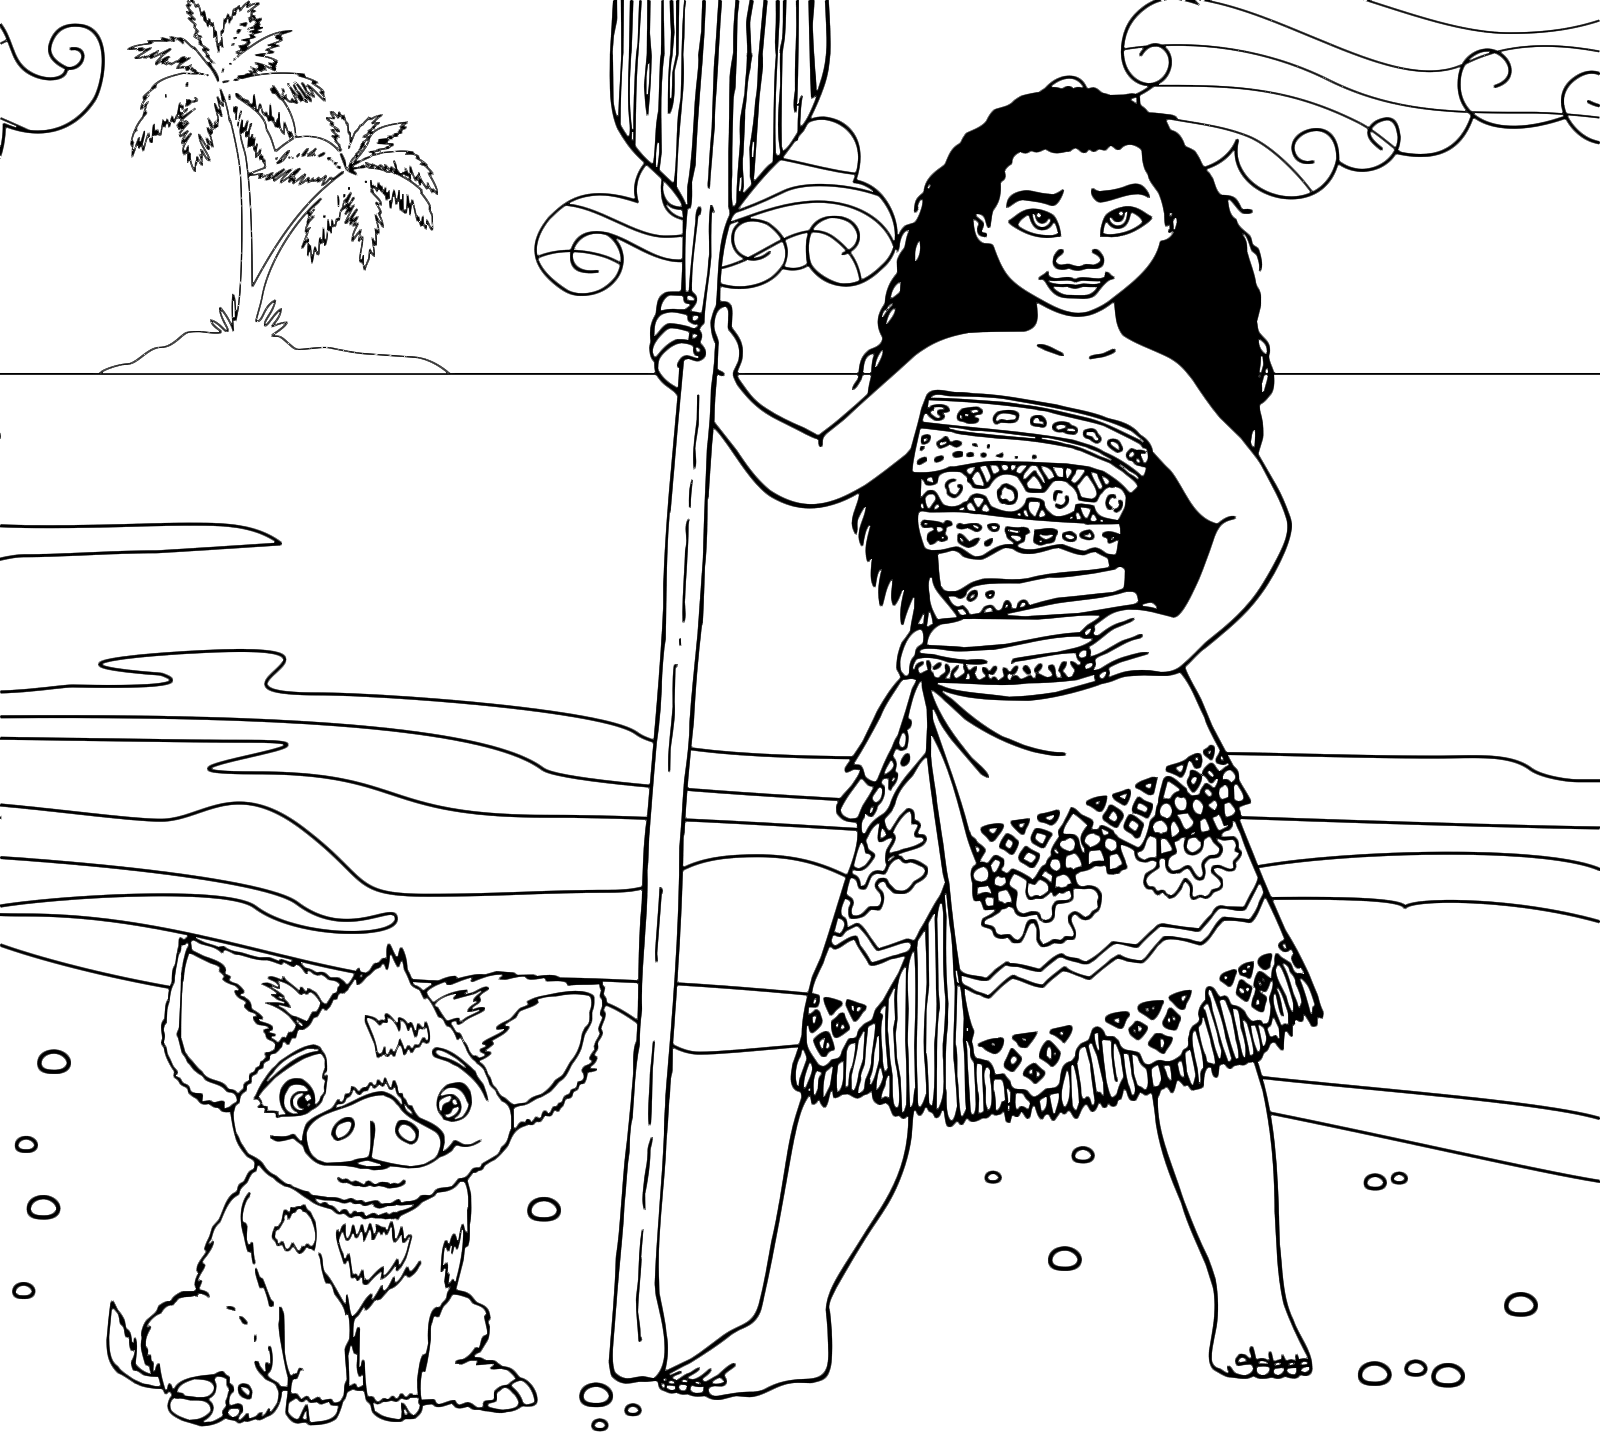 Oceania - La principessa Vaiana sulla spiaggia con il maialino Pua